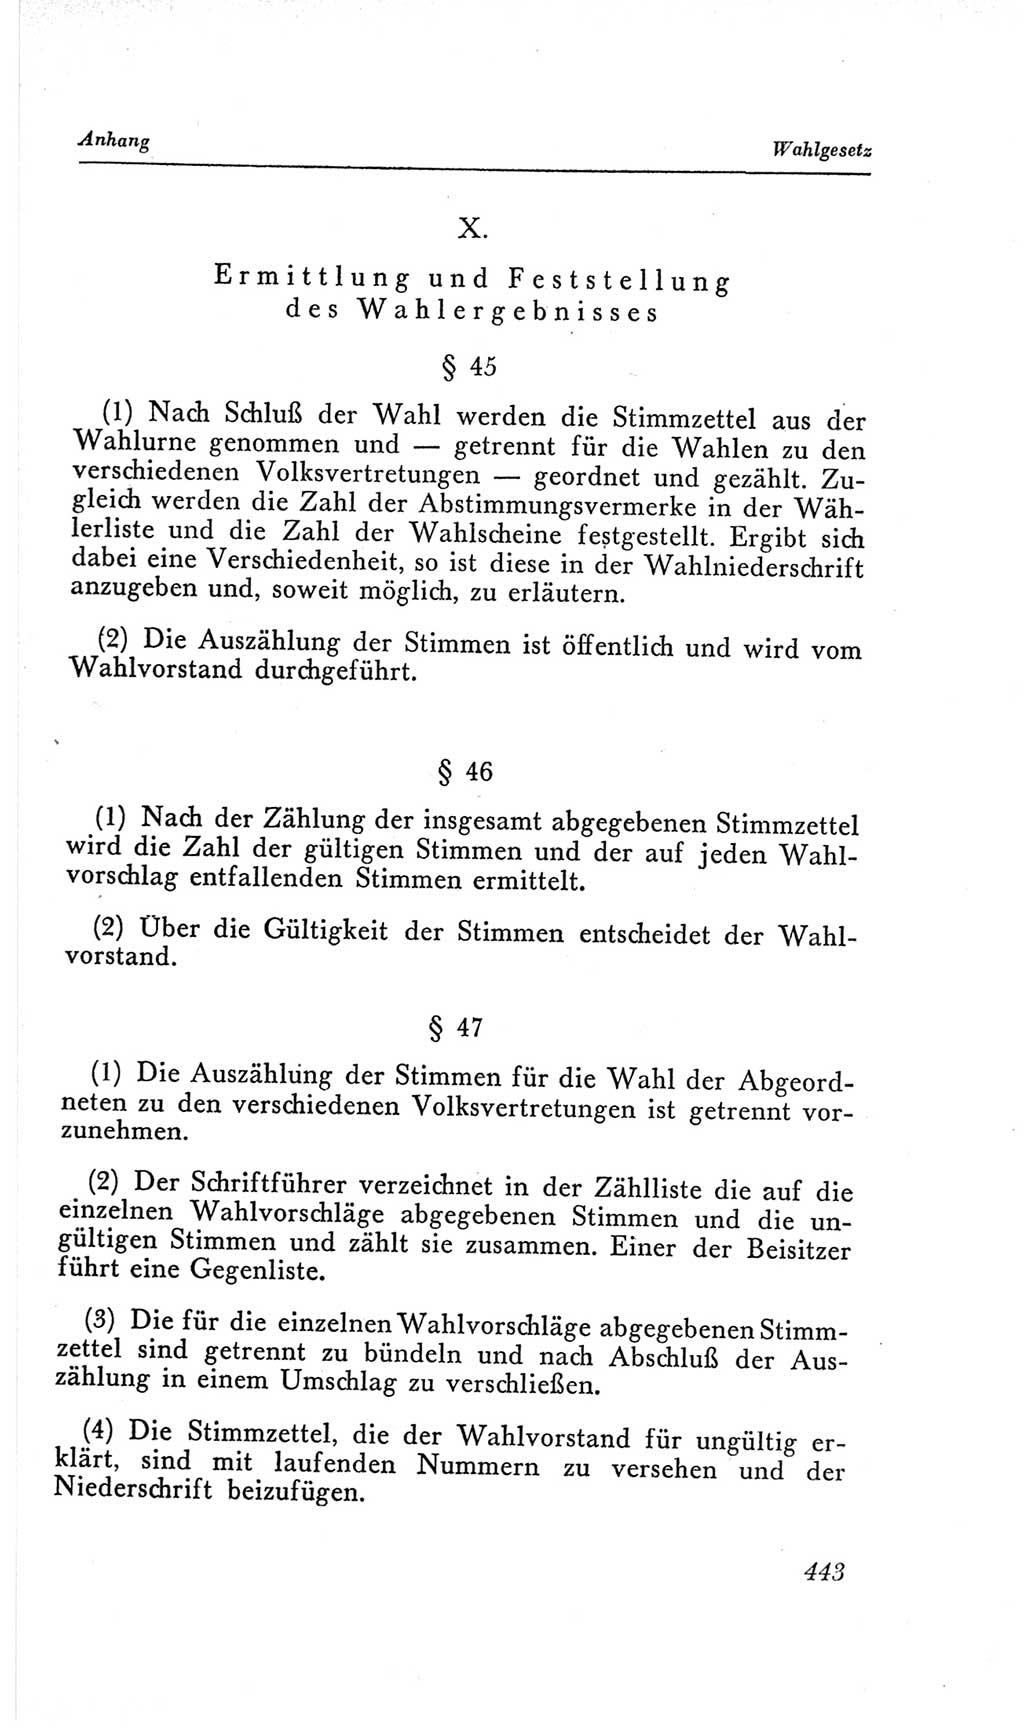 Handbuch der Volkskammer (VK) der Deutschen Demokratischen Republik (DDR), 2. Wahlperiode 1954-1958, Seite 443 (Hdb. VK. DDR, 2. WP. 1954-1958, S. 443)